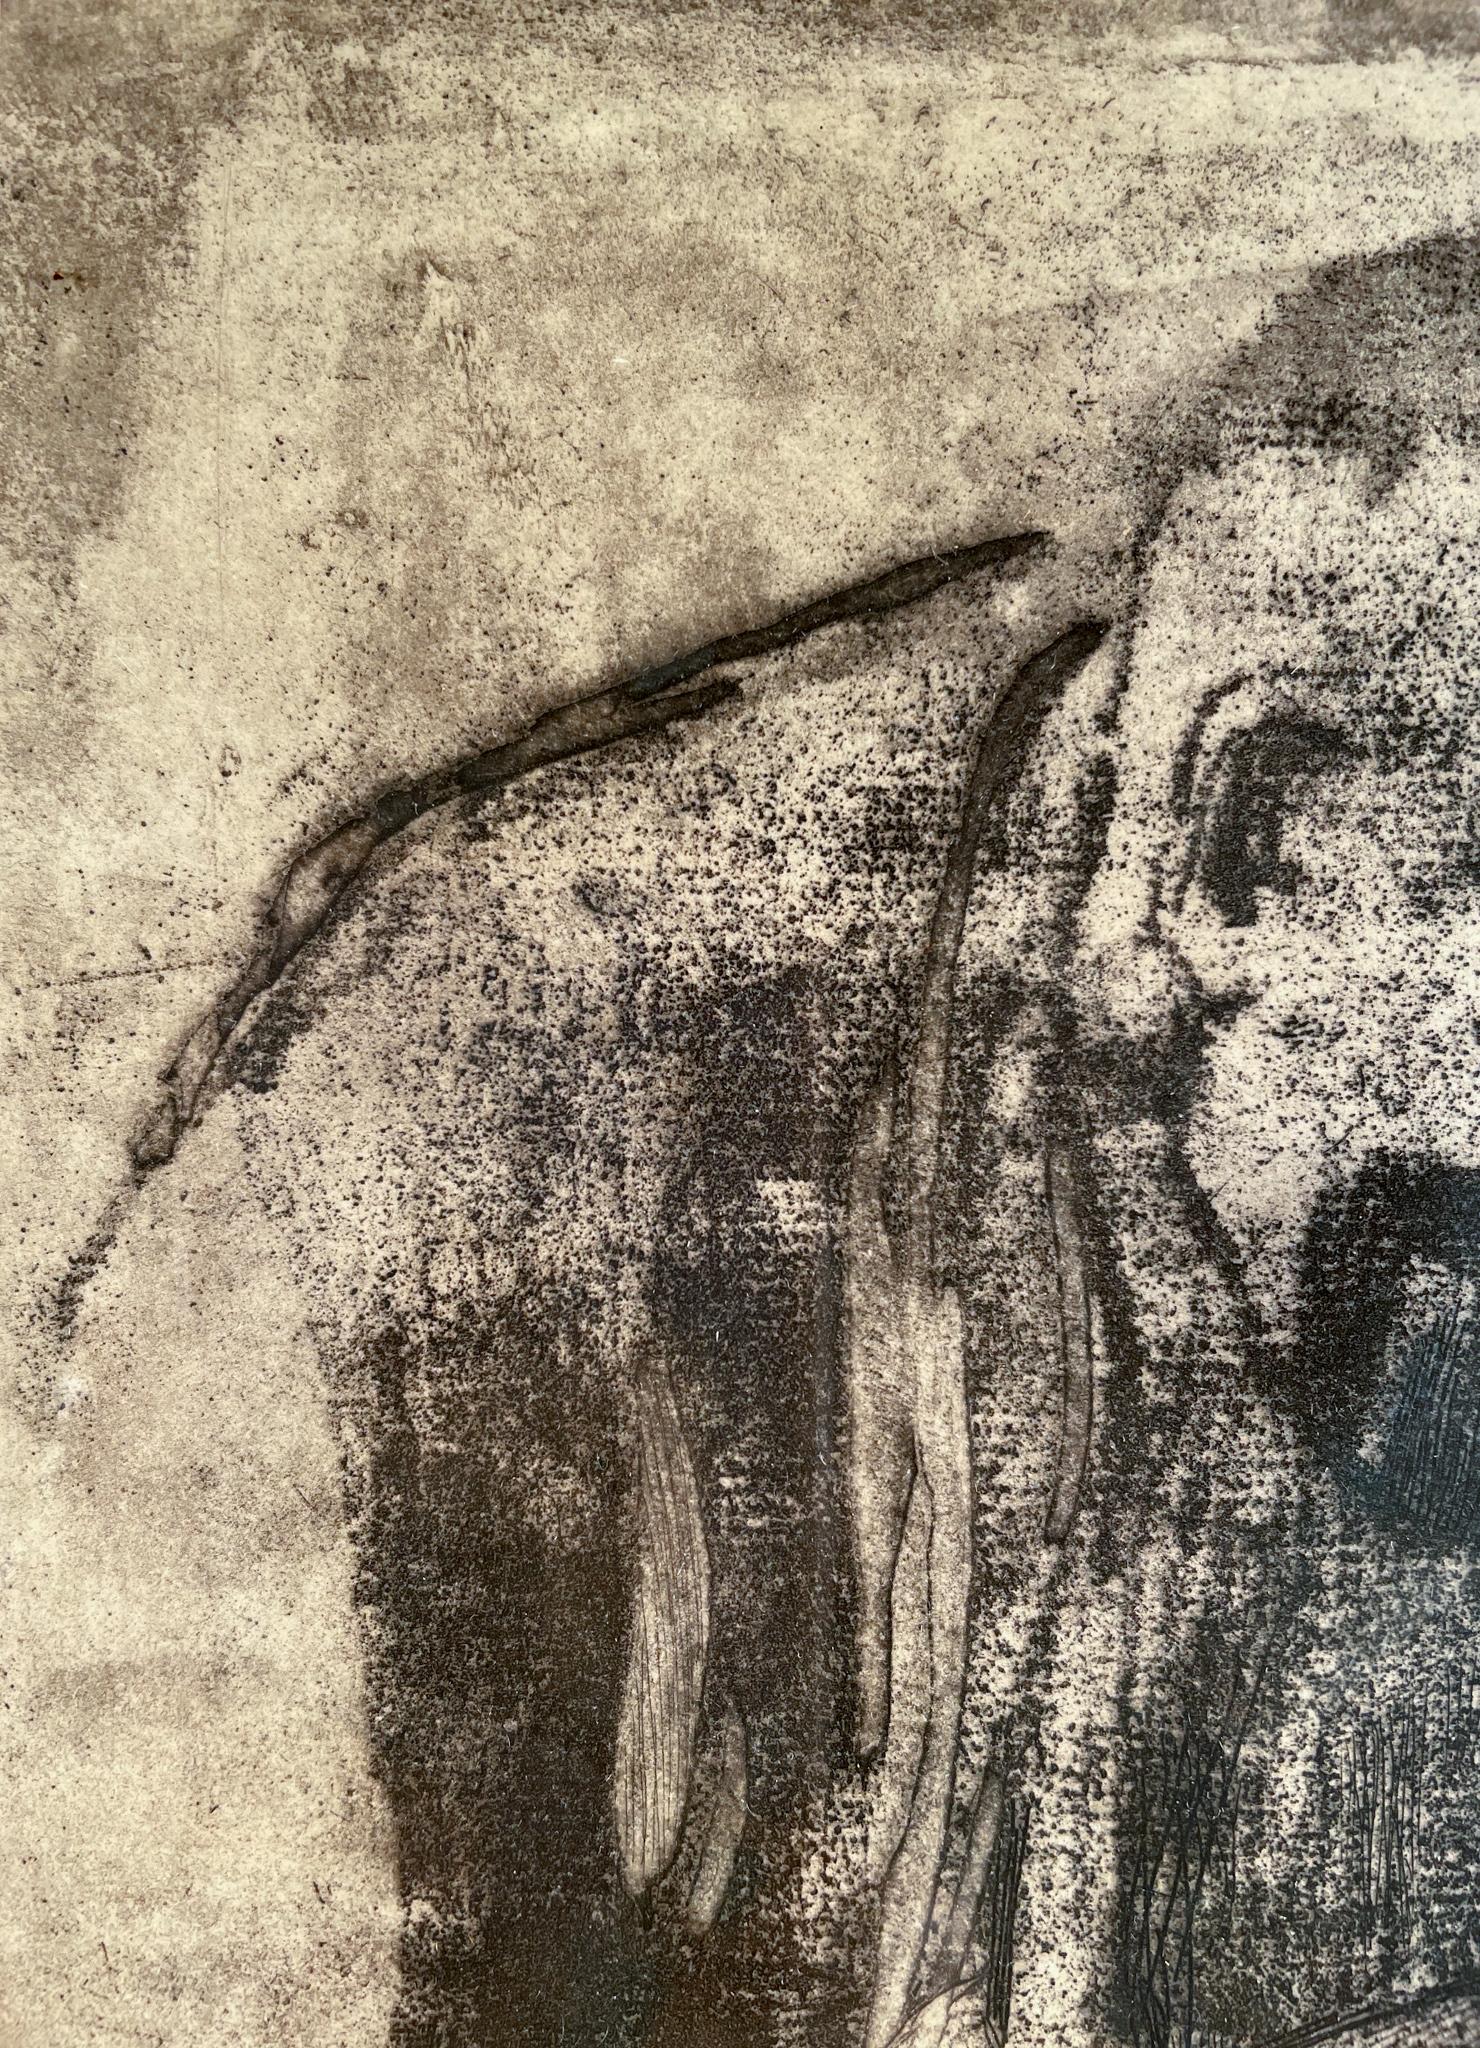 Figure abattue de Kather Kollwitz (1867-1945)
Gravure sur papier
11 ½ x 6 ¾ pouces non encadré (29,21 x 17,145 cm) 
20 x 15 pouces encadrés (50,8 x 38,1 cm) 

Description :
Dans cette gravure, Kathe Kollwitz rend une figure légèrement androgyne, en